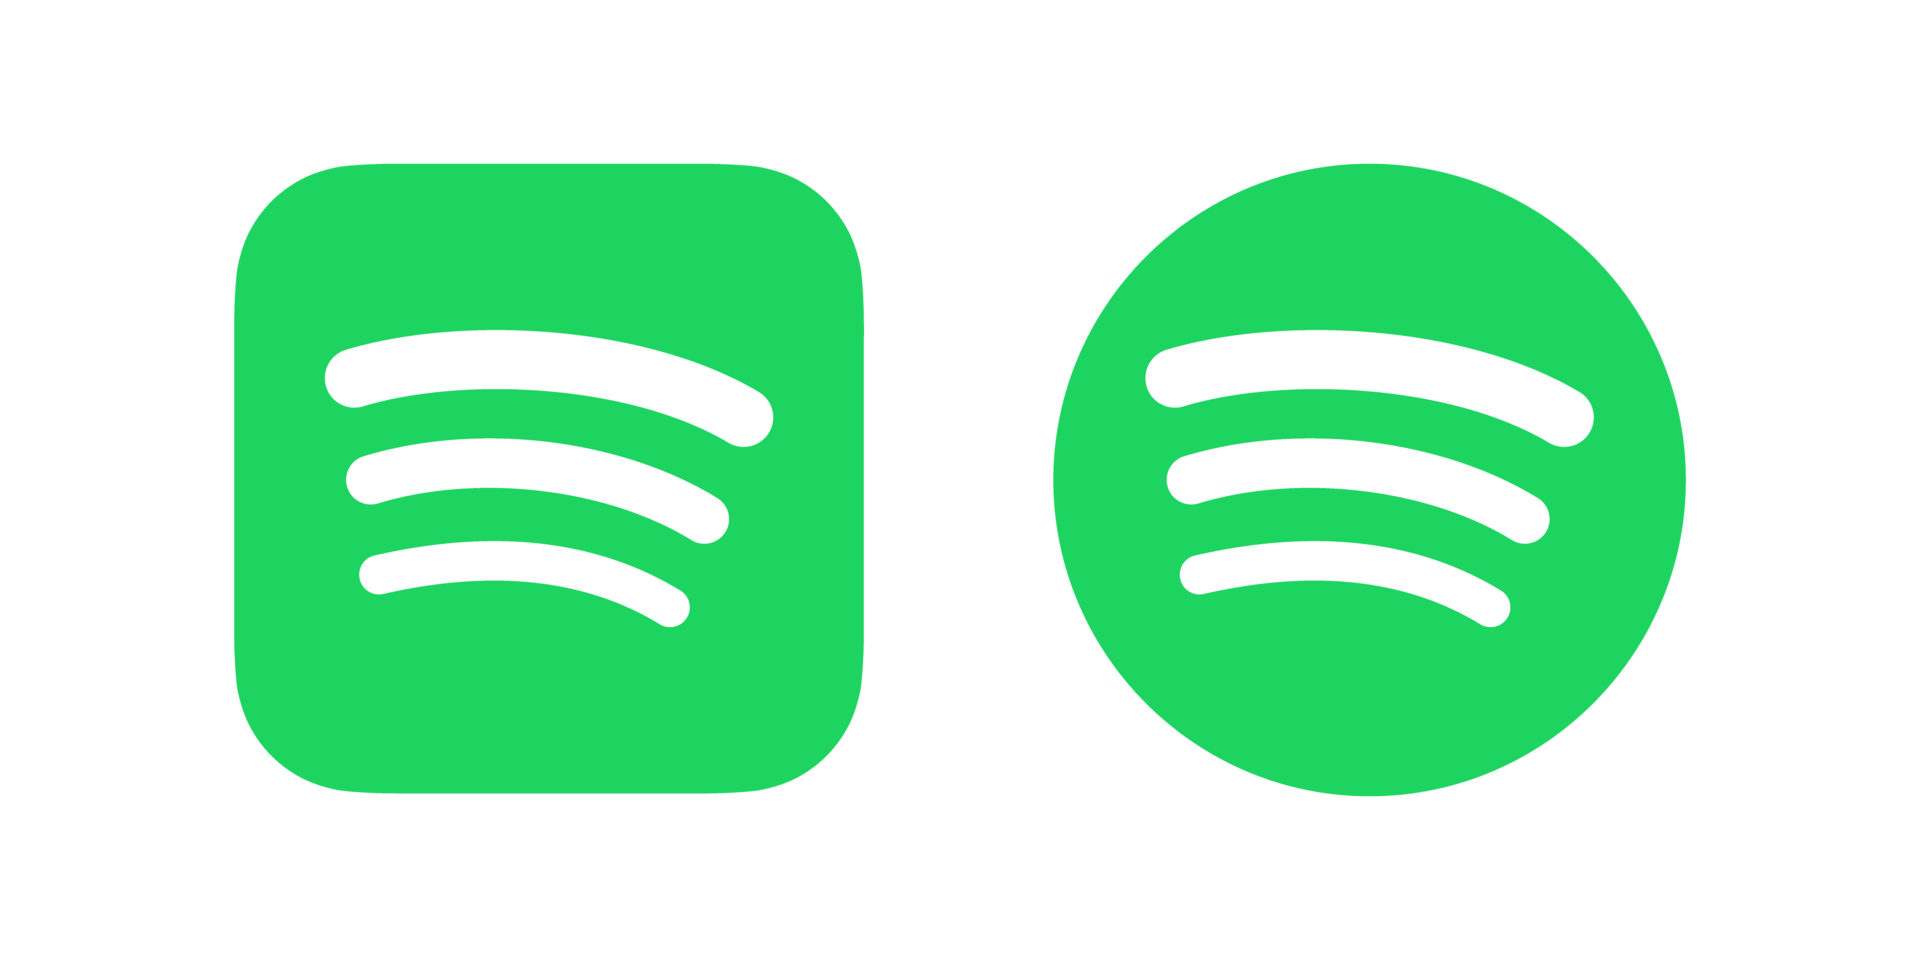 Spotify: Spotify là ứng dụng âm nhạc hàng đầu thế giới, cung cấp đến người dùng hàng triệu bài hát, album và danh sách phát chất lượng cao. Tại đây, bạn có thể khám phá các bài hát mới và playlist phù hợp với mọi sở thích của mình. Cùng thư giãn và tận hưởng âm nhạc với Spotify nhé!